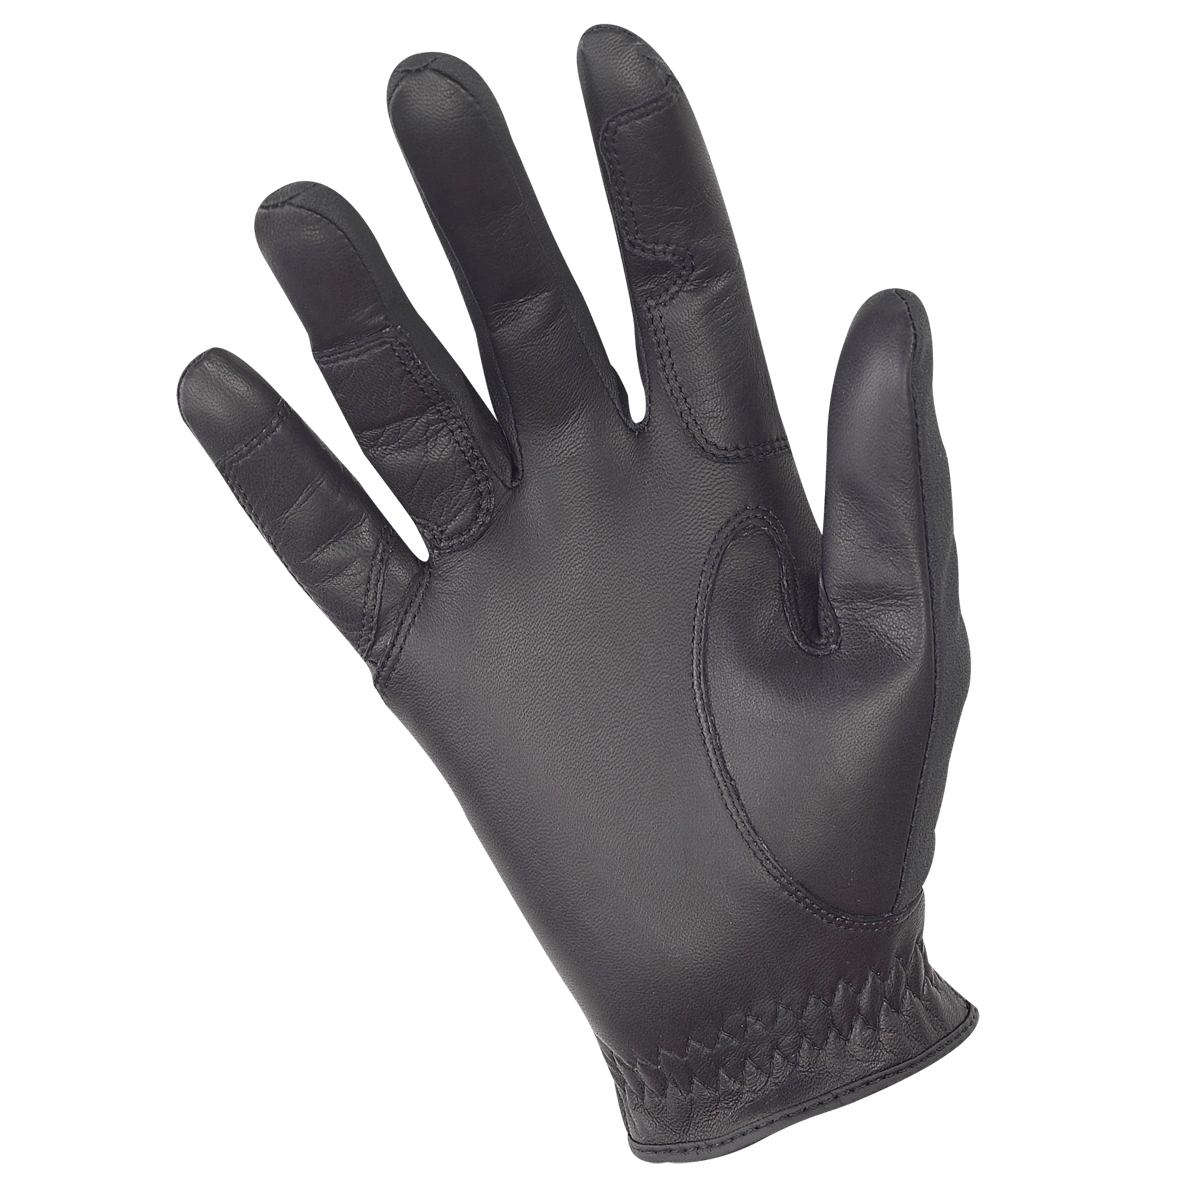 Pro-Comp Show Gloves